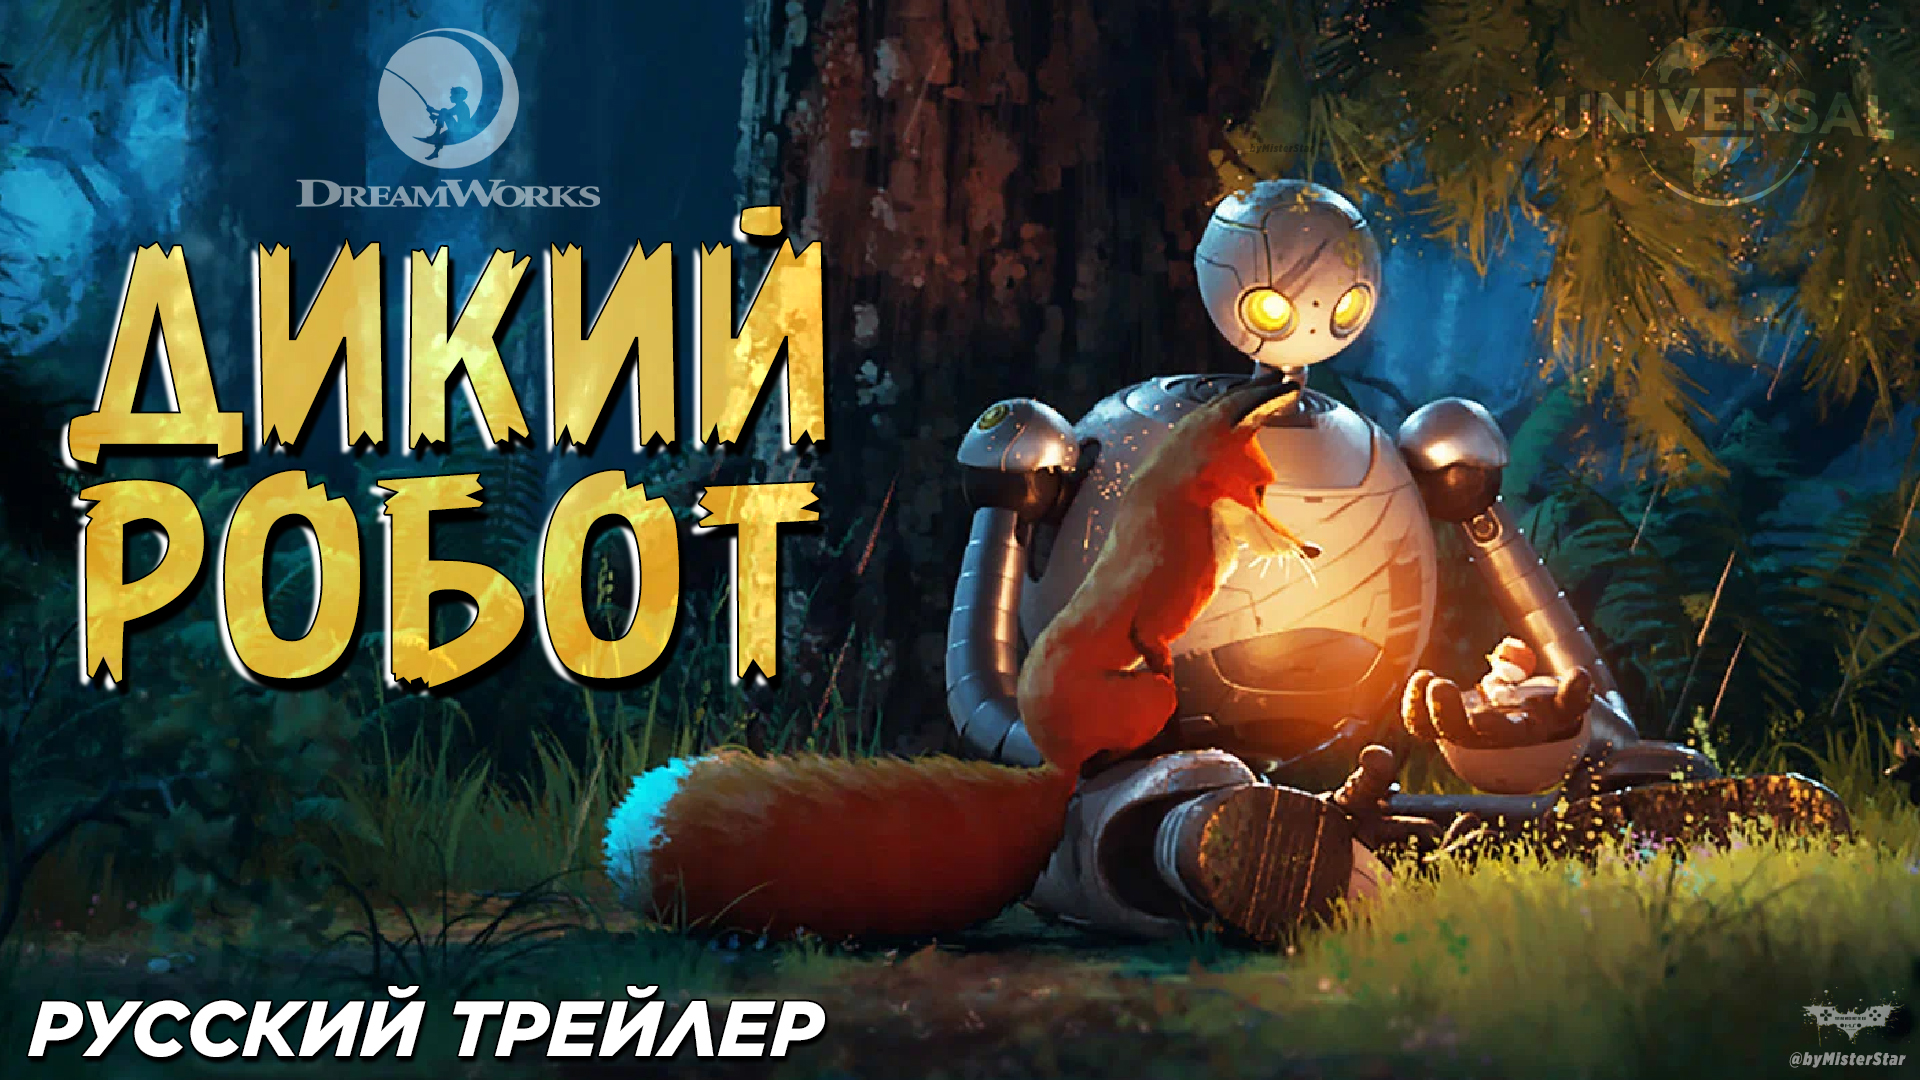 Дикий робот (2024) | Русский дублированный трейлер (6+) |  DreamWorks Animation